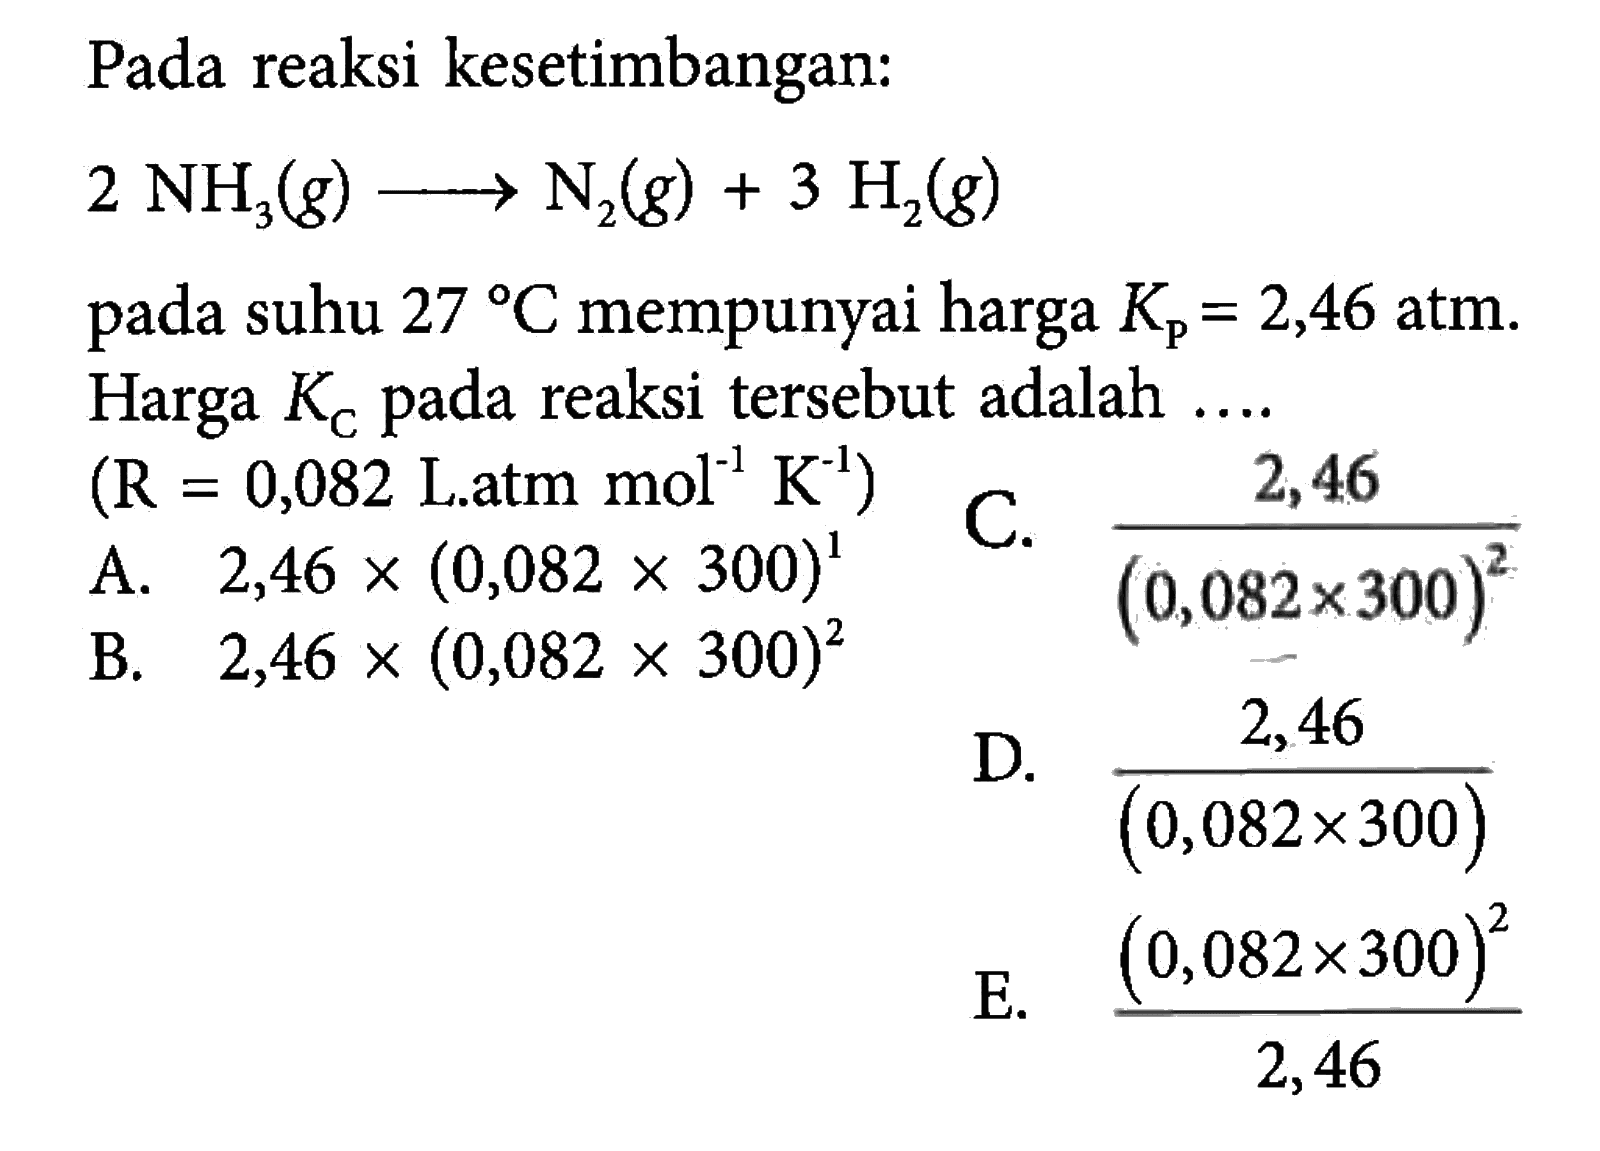 Pada reaksi kesetimbangan: 2NH3(g) -> N2(g)+3H2(g) pada suhu 27 C mempunyai harga Kp=2,46 atm. Harga KC pada reaksi tersebut adalah  ... . (R=0,082 L.atm mol^-1 K^-1) 